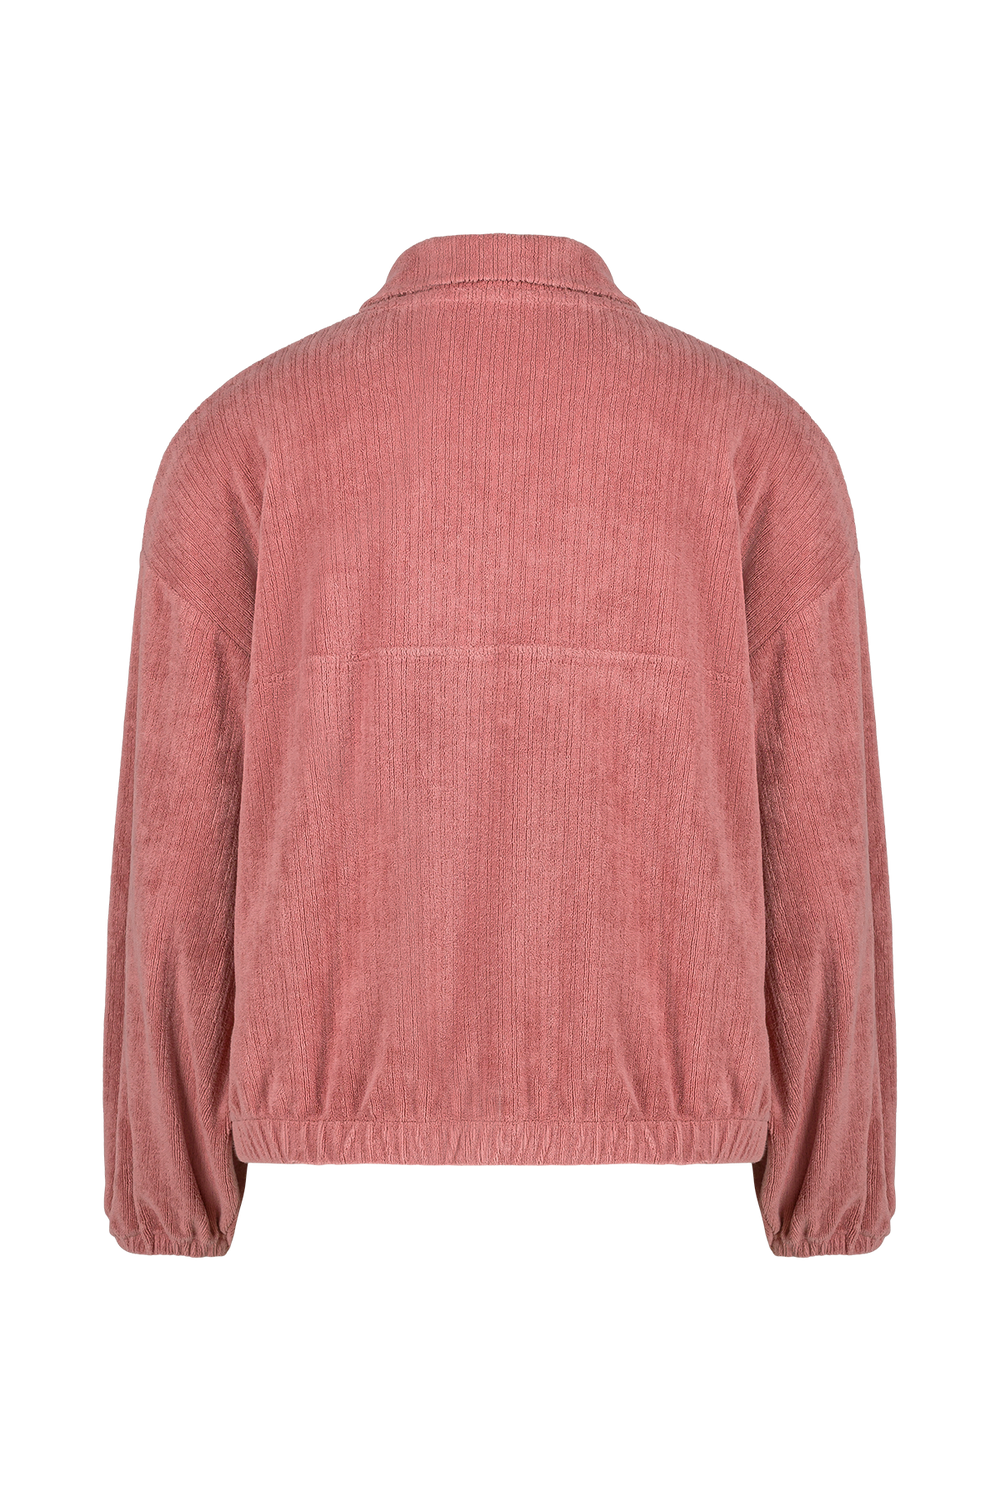 Electra Sweatshirt - Ash Pink